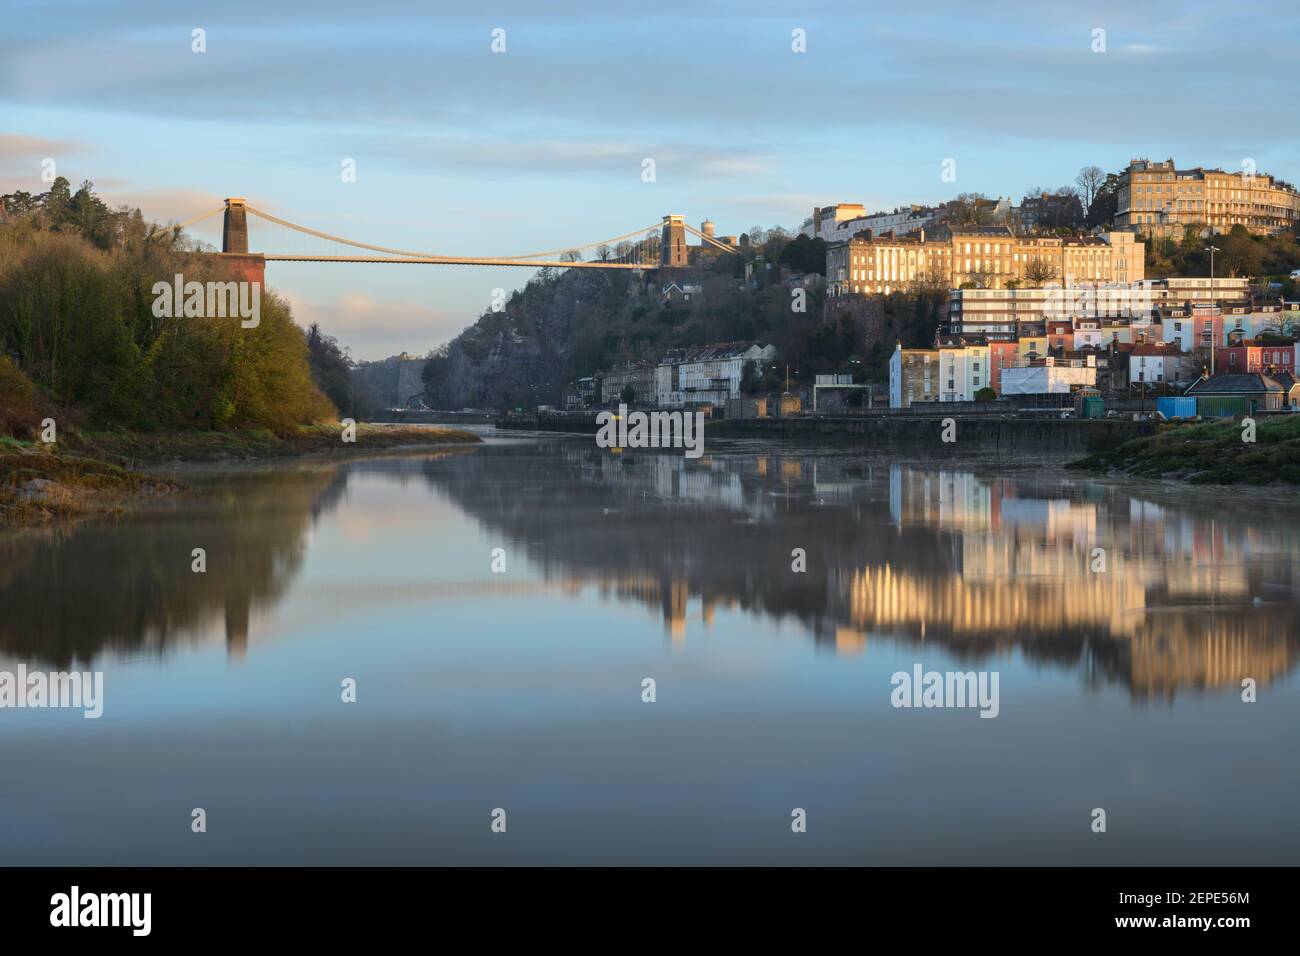 Le pont suspendu de Clifton à Bristol se reflète dans les eaux calmes de la rivière Avon à marée haute. Banque D'Images